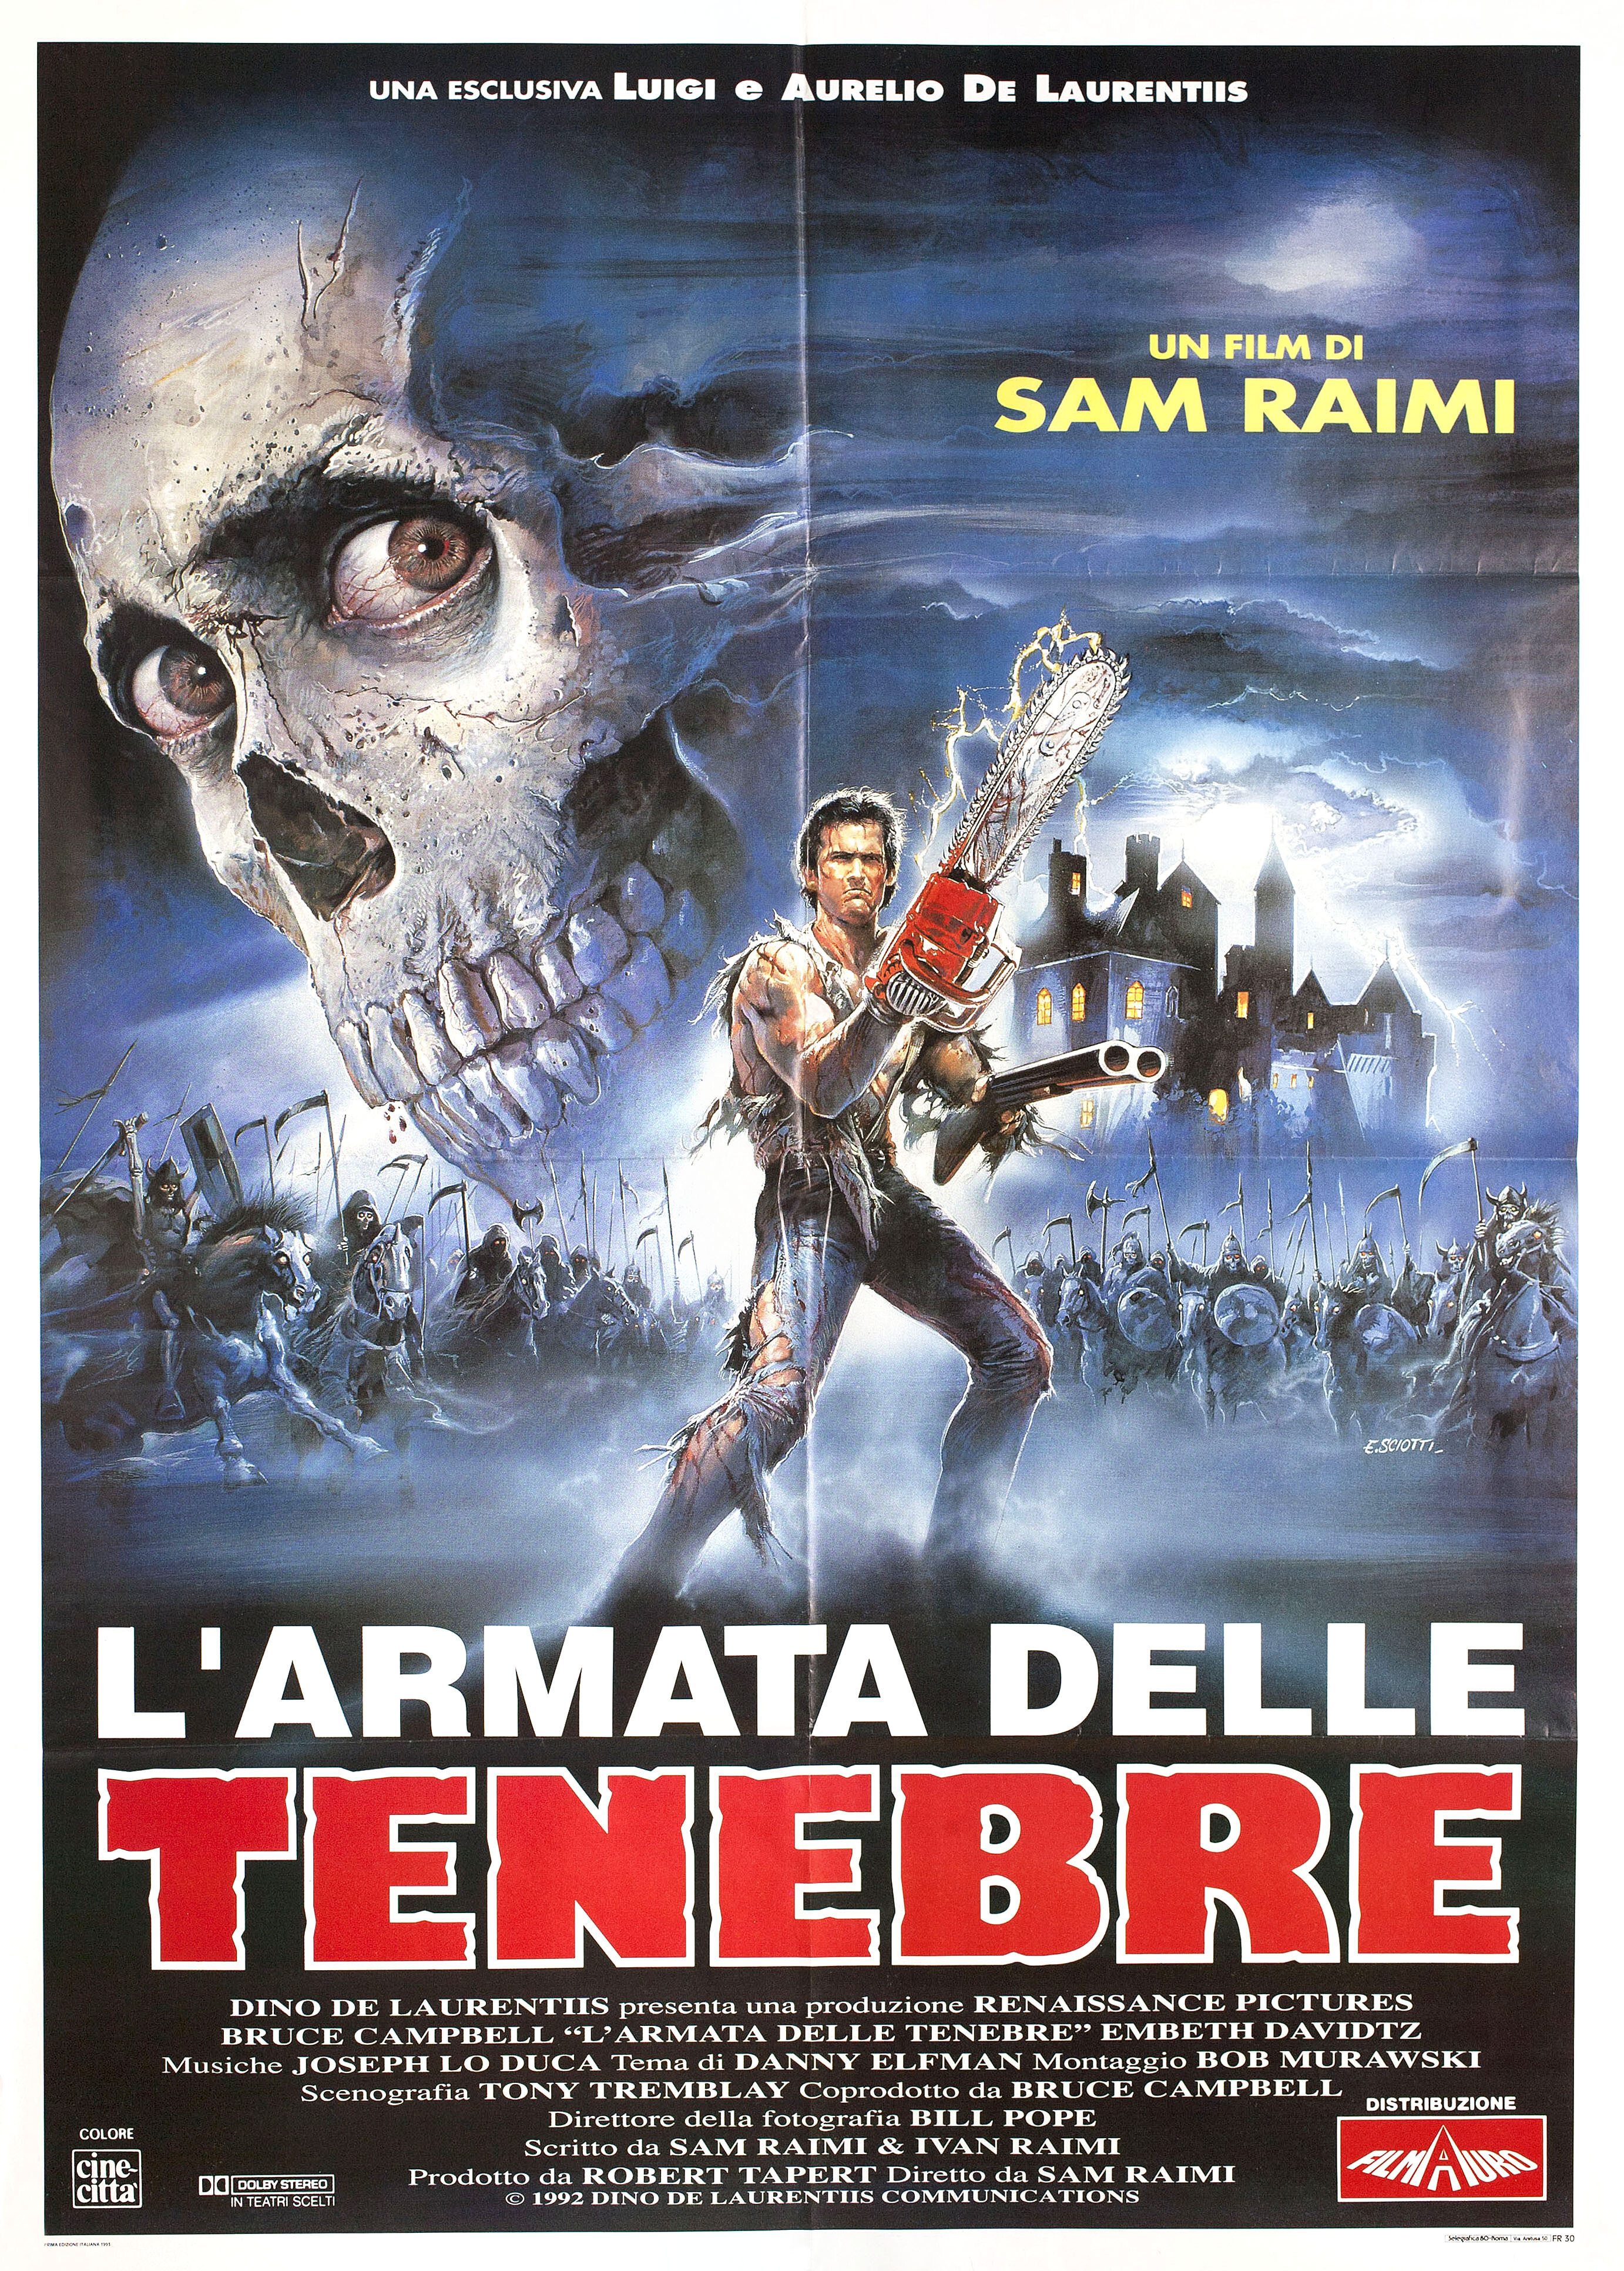 Зловещие мертвецы 3: Армия тьмы (Army of Darkness, 1992), режиссёр Сэм Рэйми, итальянский постер к фильму, автор Энцо Скиотти (ужасы, 1992 год)